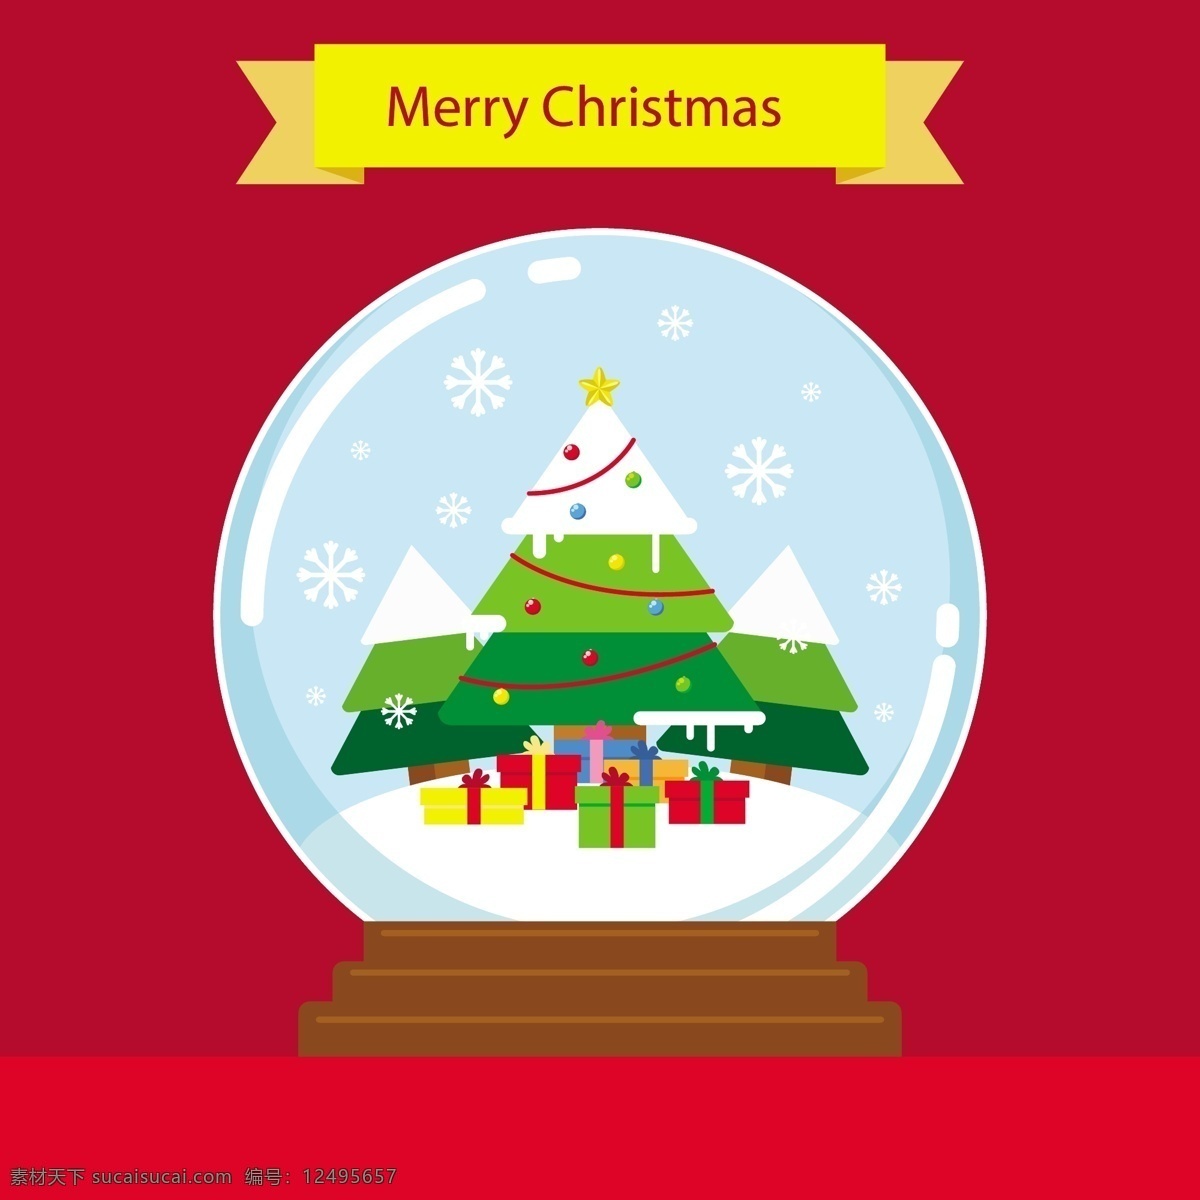 节日素材 圣诞 圣诞节 圣诞素材 圣诞雪球素材 圣诞元素 雪球 雪球素材